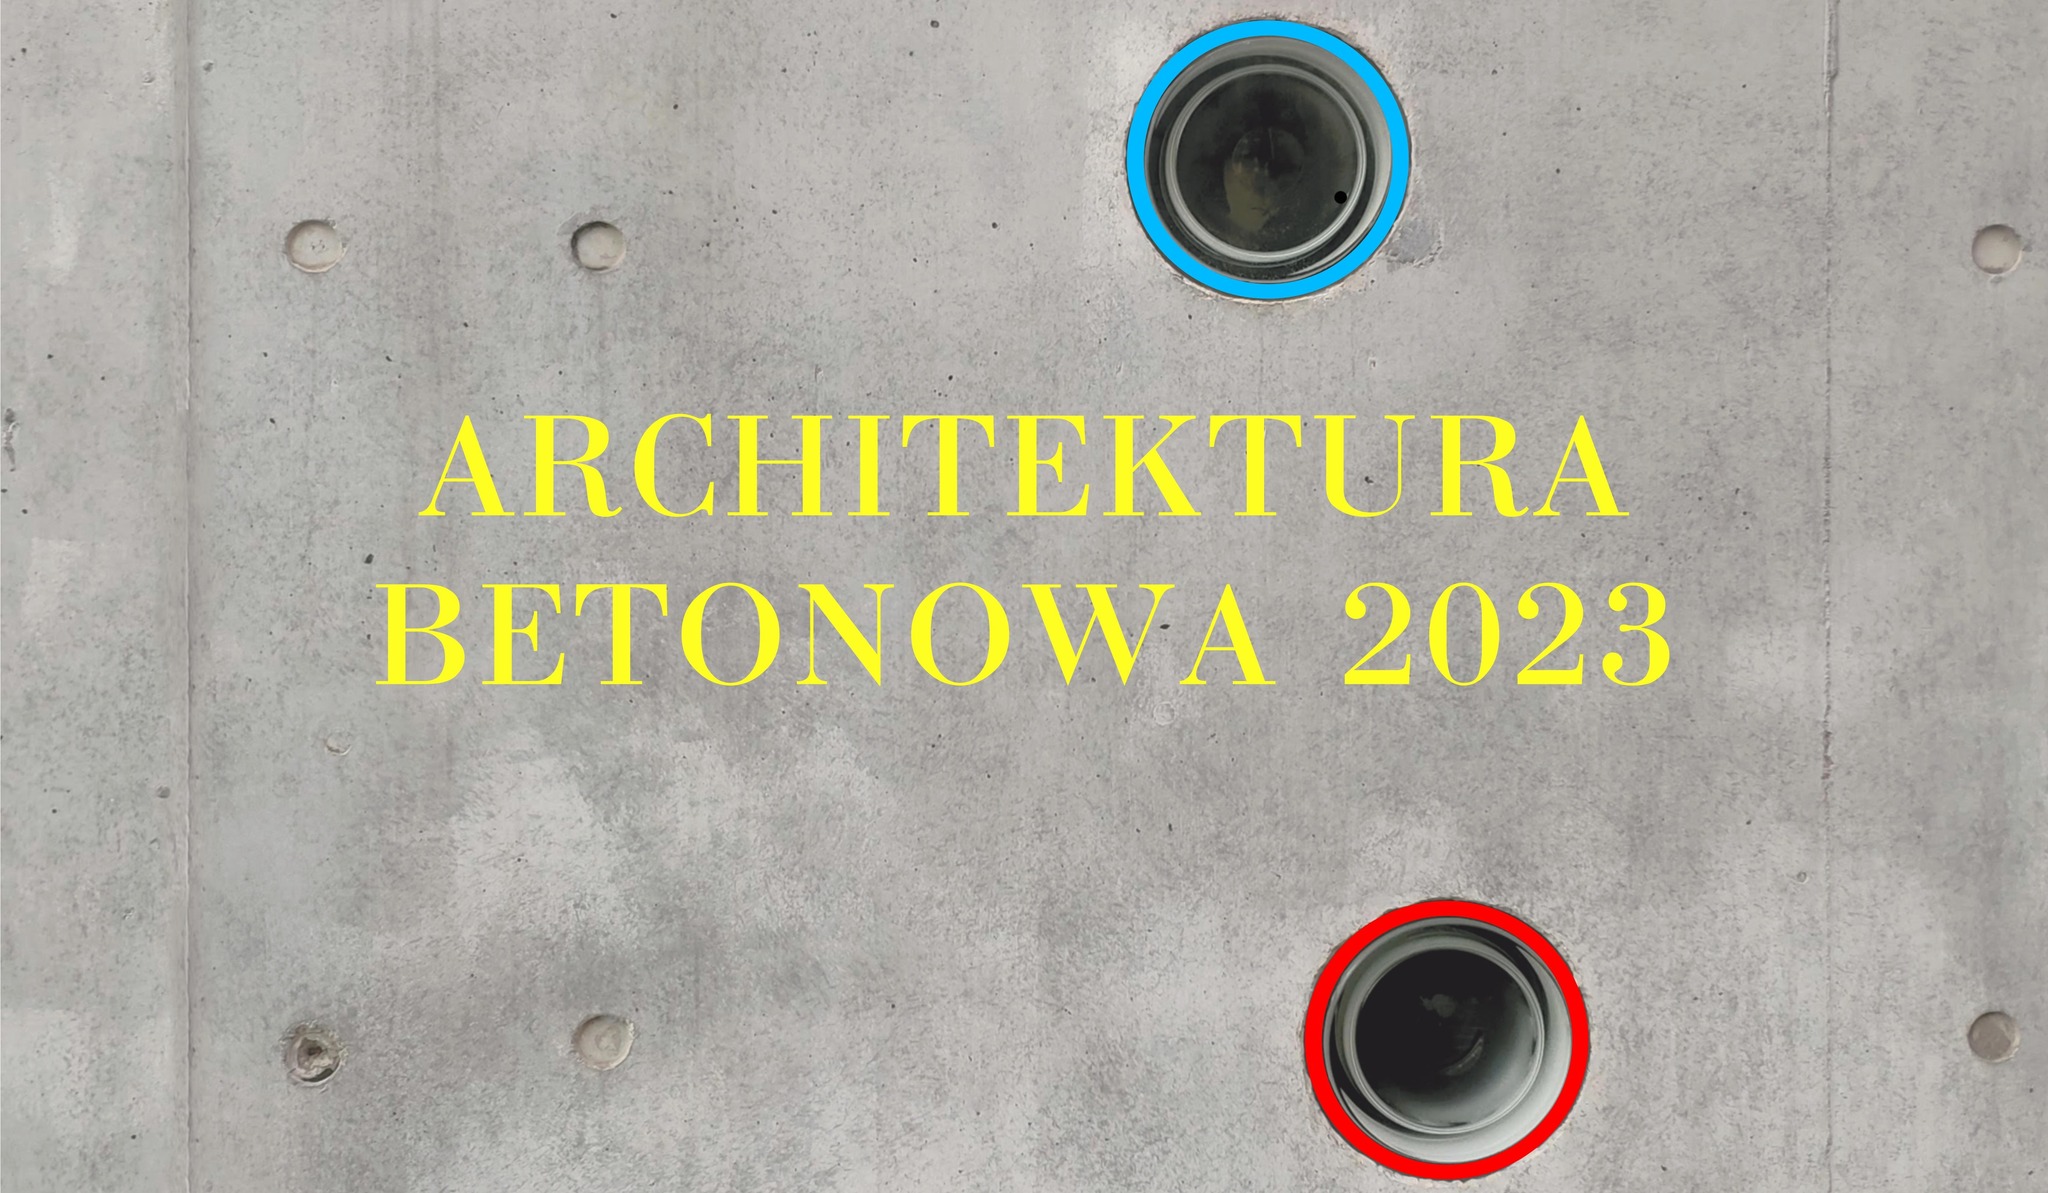 ARCHITEKTURA BETONOWA 2023